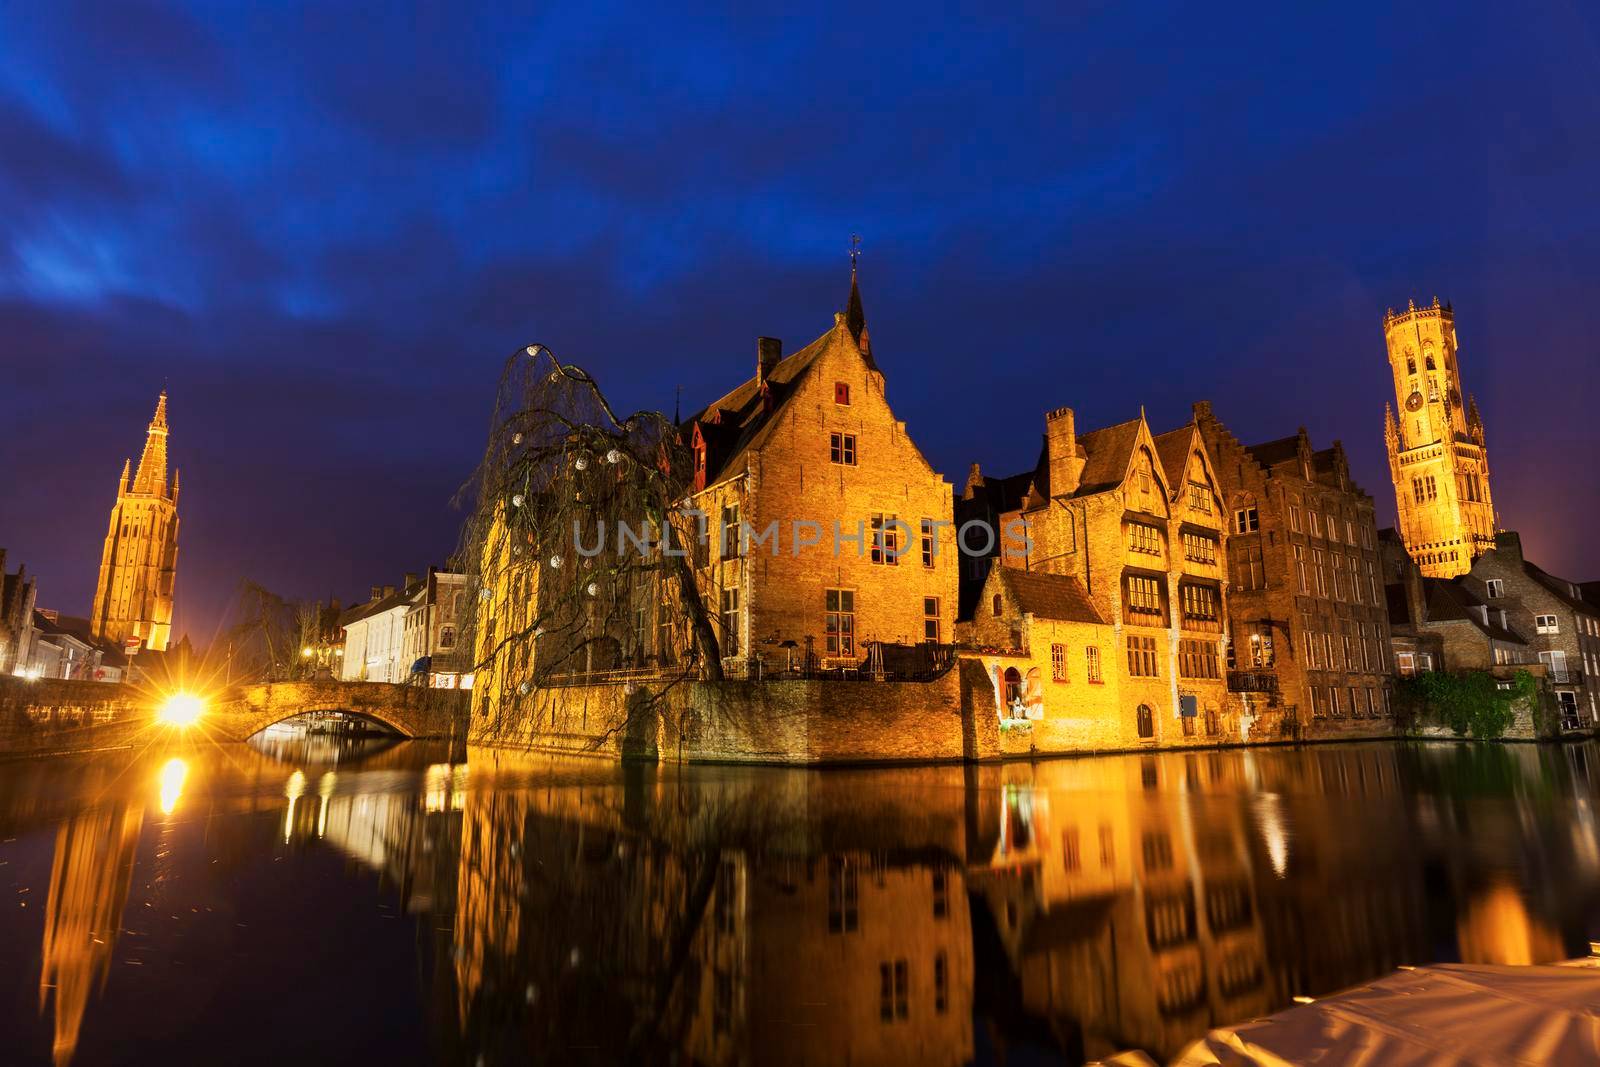 Belfry of Bruges reflected in the canal. Bruges, Flemish Region, Belgium